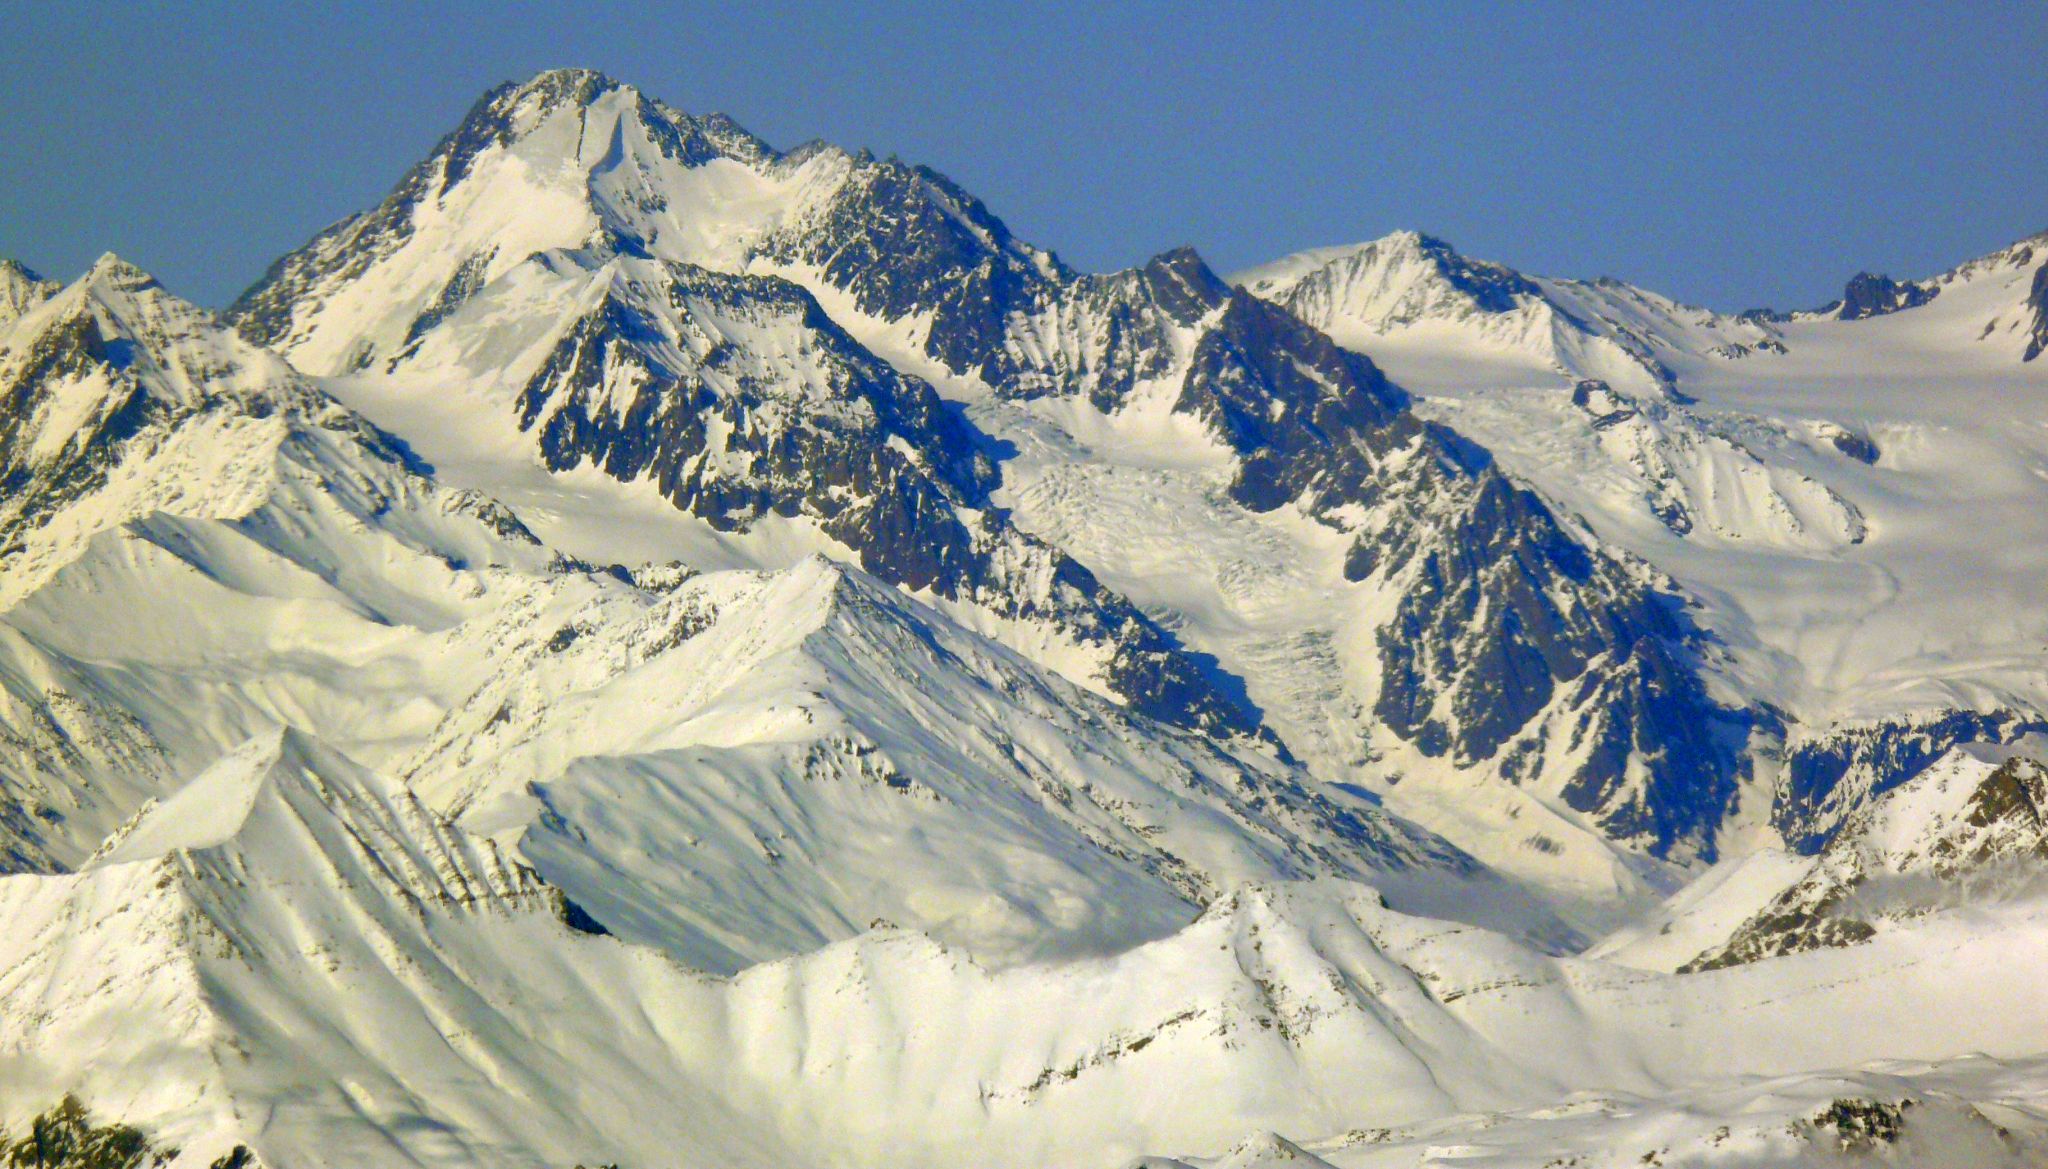 Mount Kazbek in the Caucasus